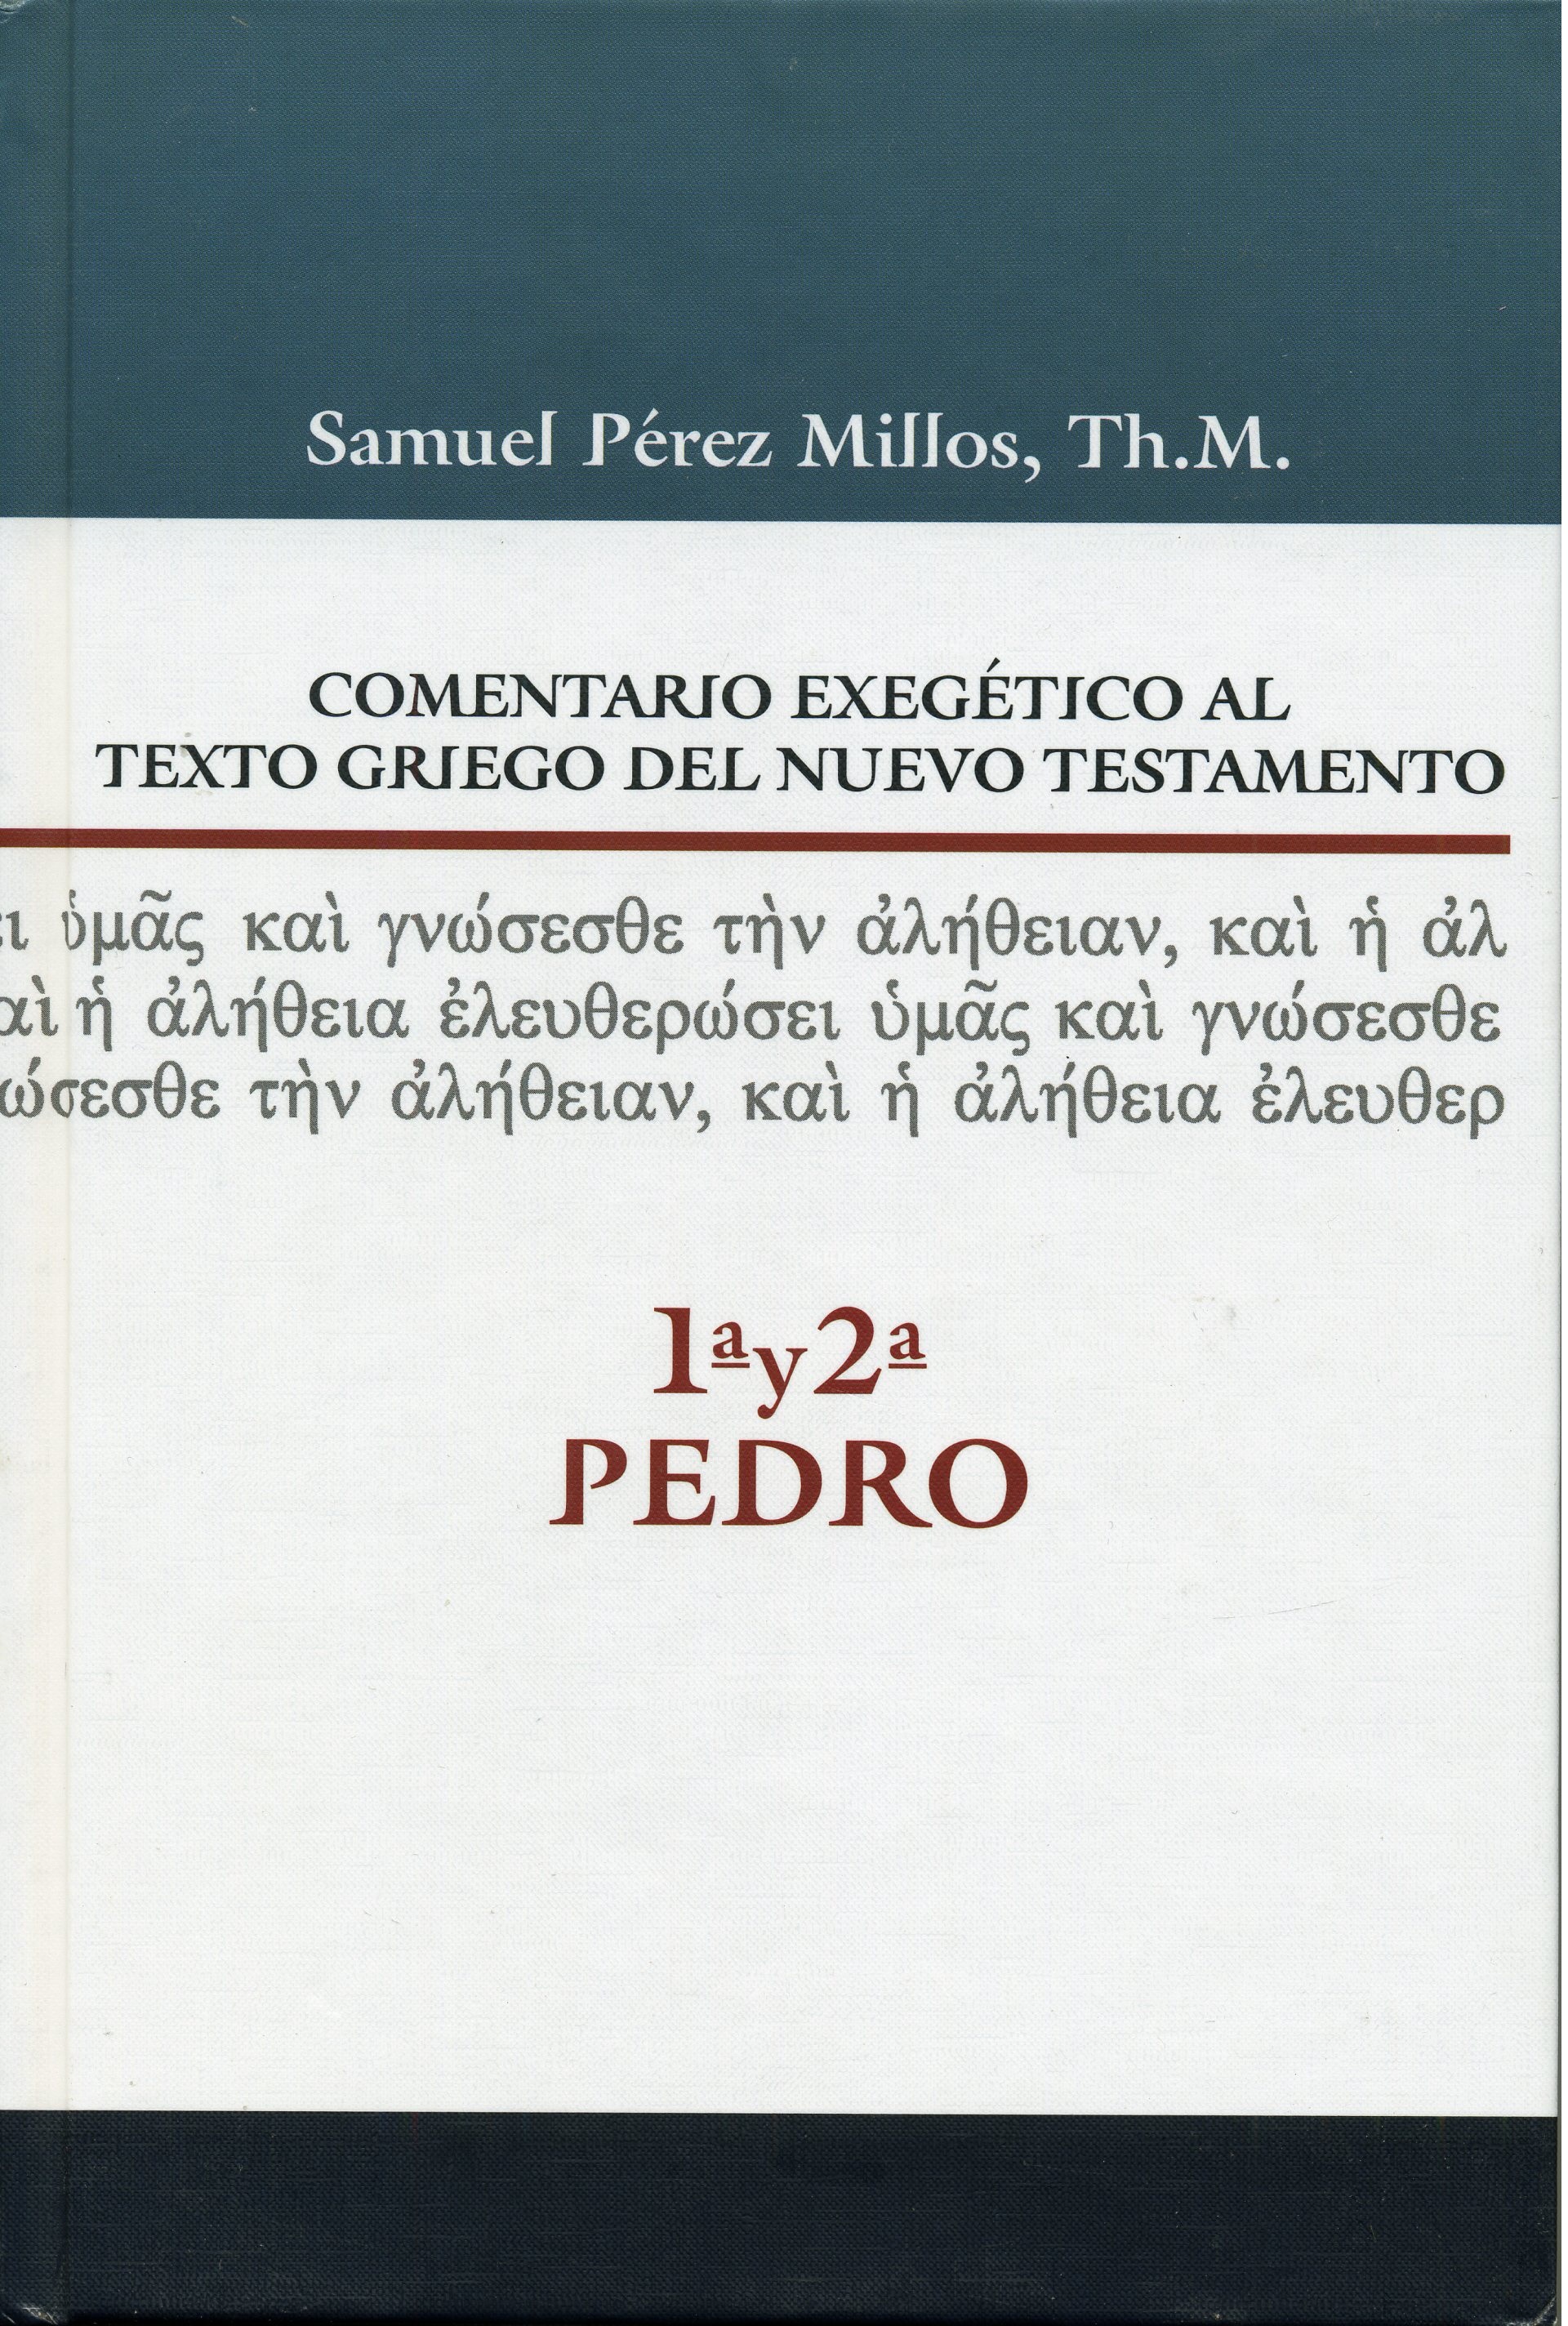 Comentario Exegético del Griego 1 y 2 Pedro